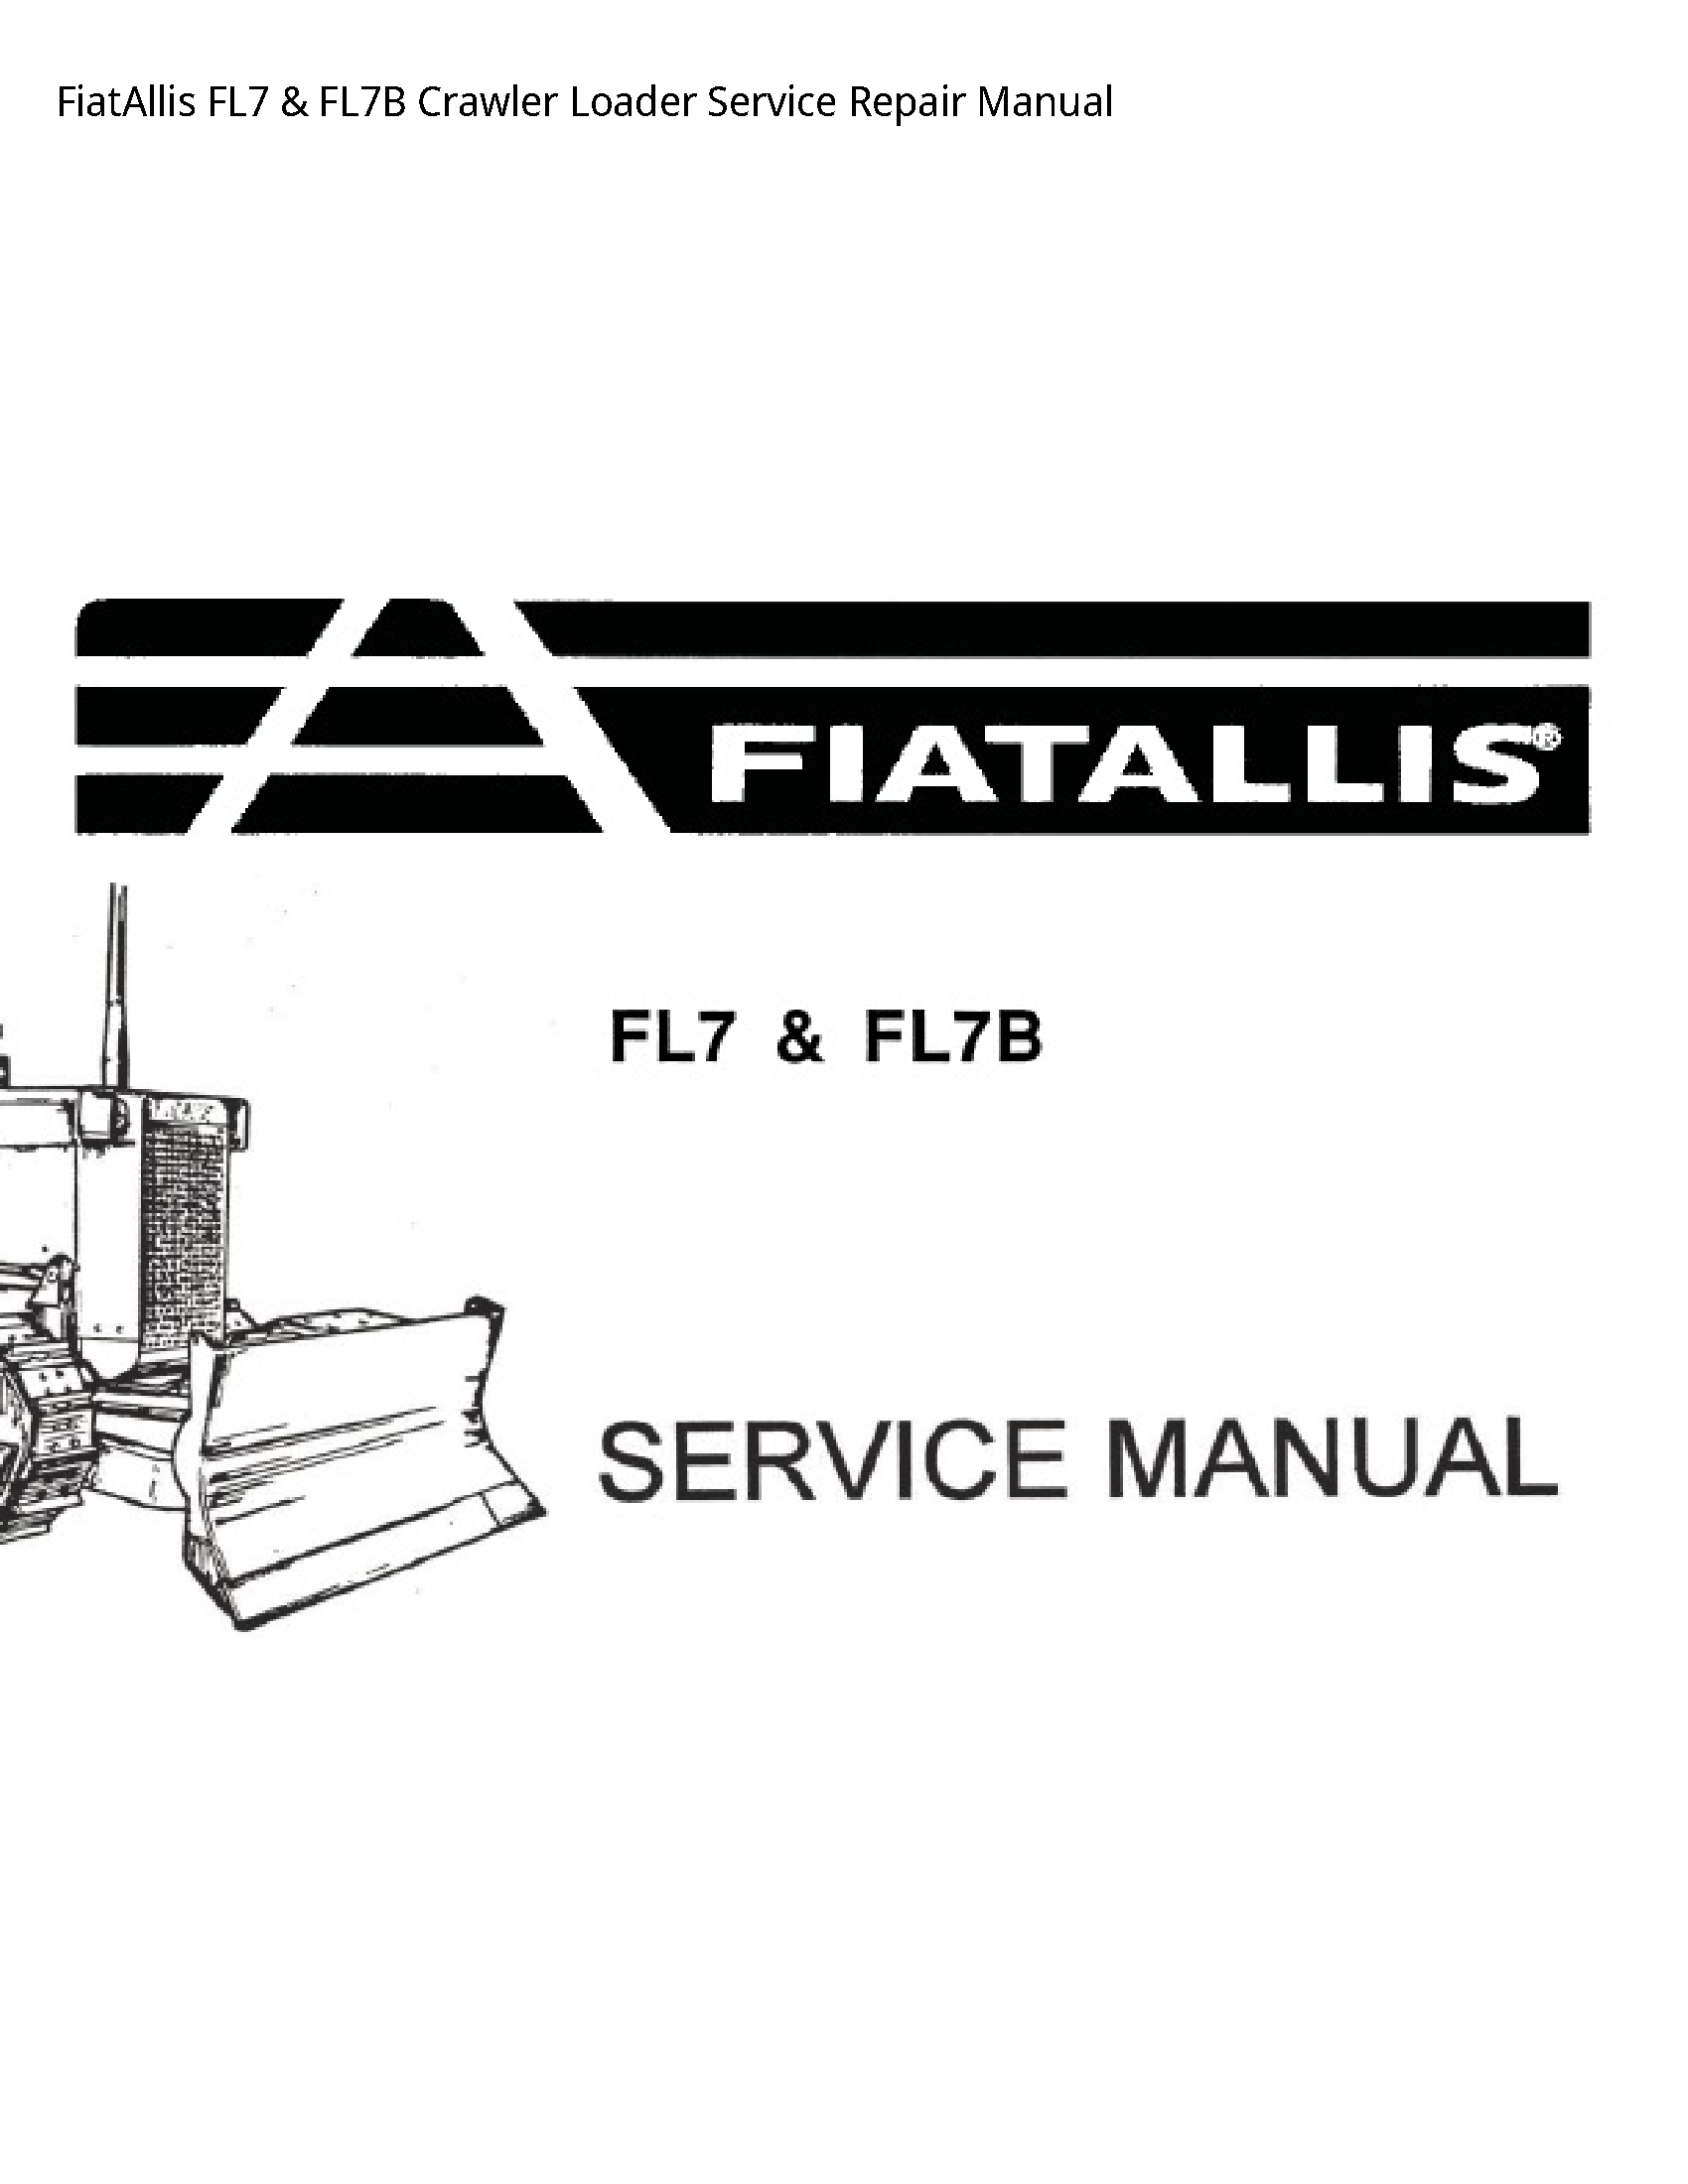 Fiatallis FL7 Crawler Loader manual